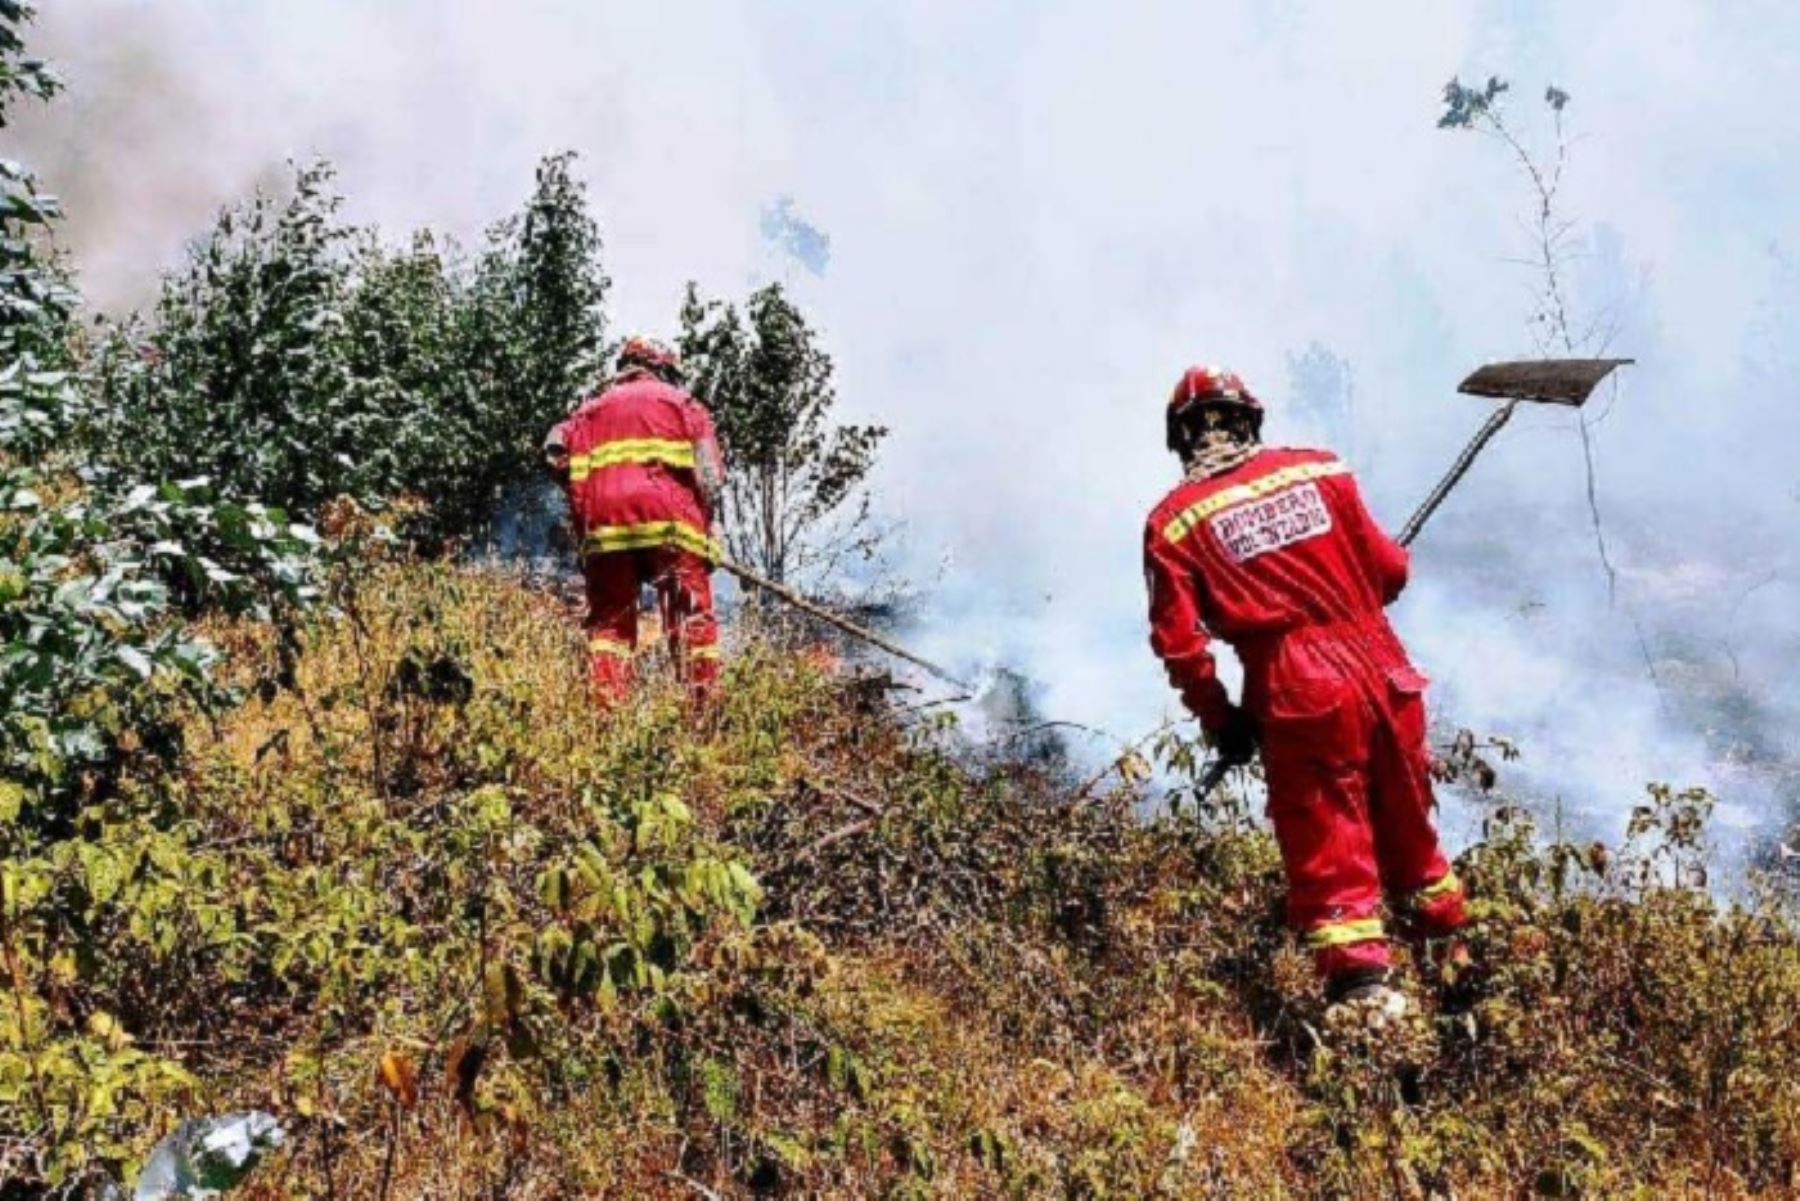 Un total de 12 incendios forestales se registraron en los últimos días en la región Cajamarca, de los cuales 5 se mantienen activos y vienen siendo sofocados con intervención de los bomberos. Cerca de 1,000 hectáreas naturales son arrasadas por el fuego, la mayoría pastizales.